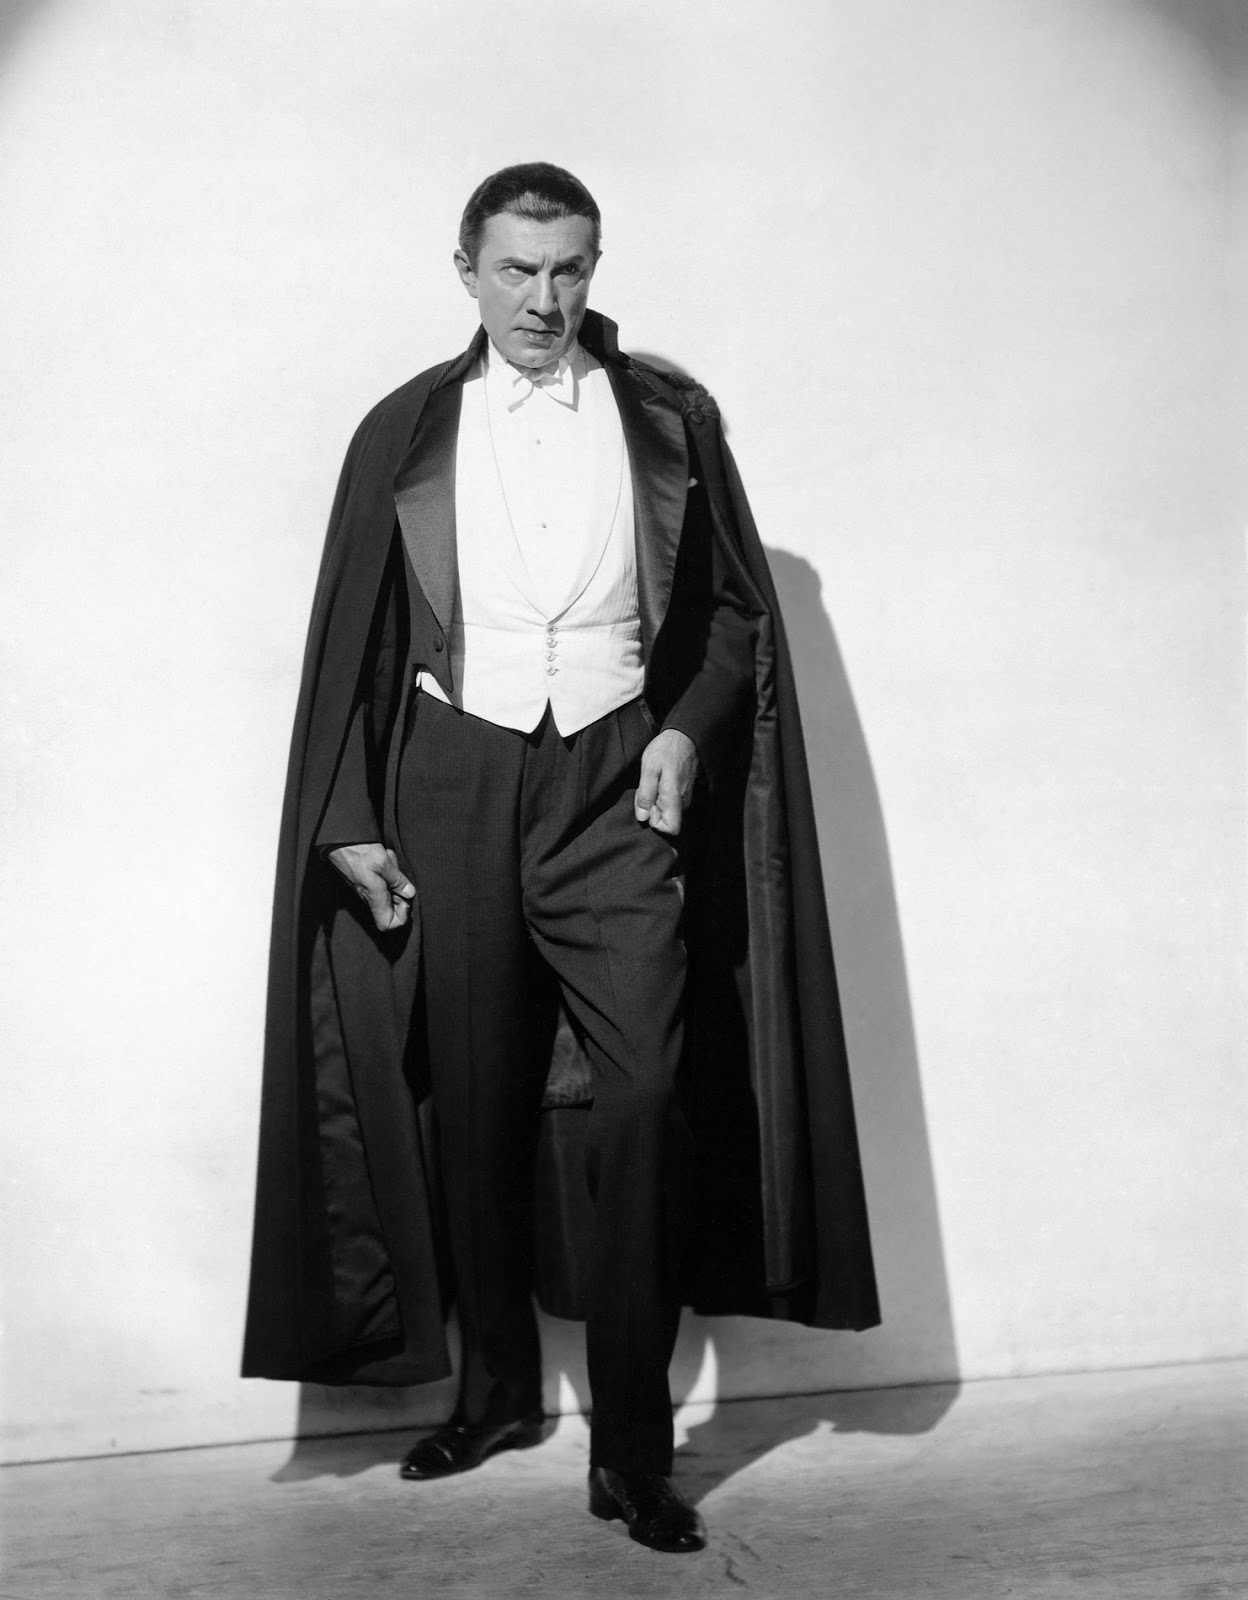 Martin Grams Bela Lugosi S Lost 1928 Dracula Performance